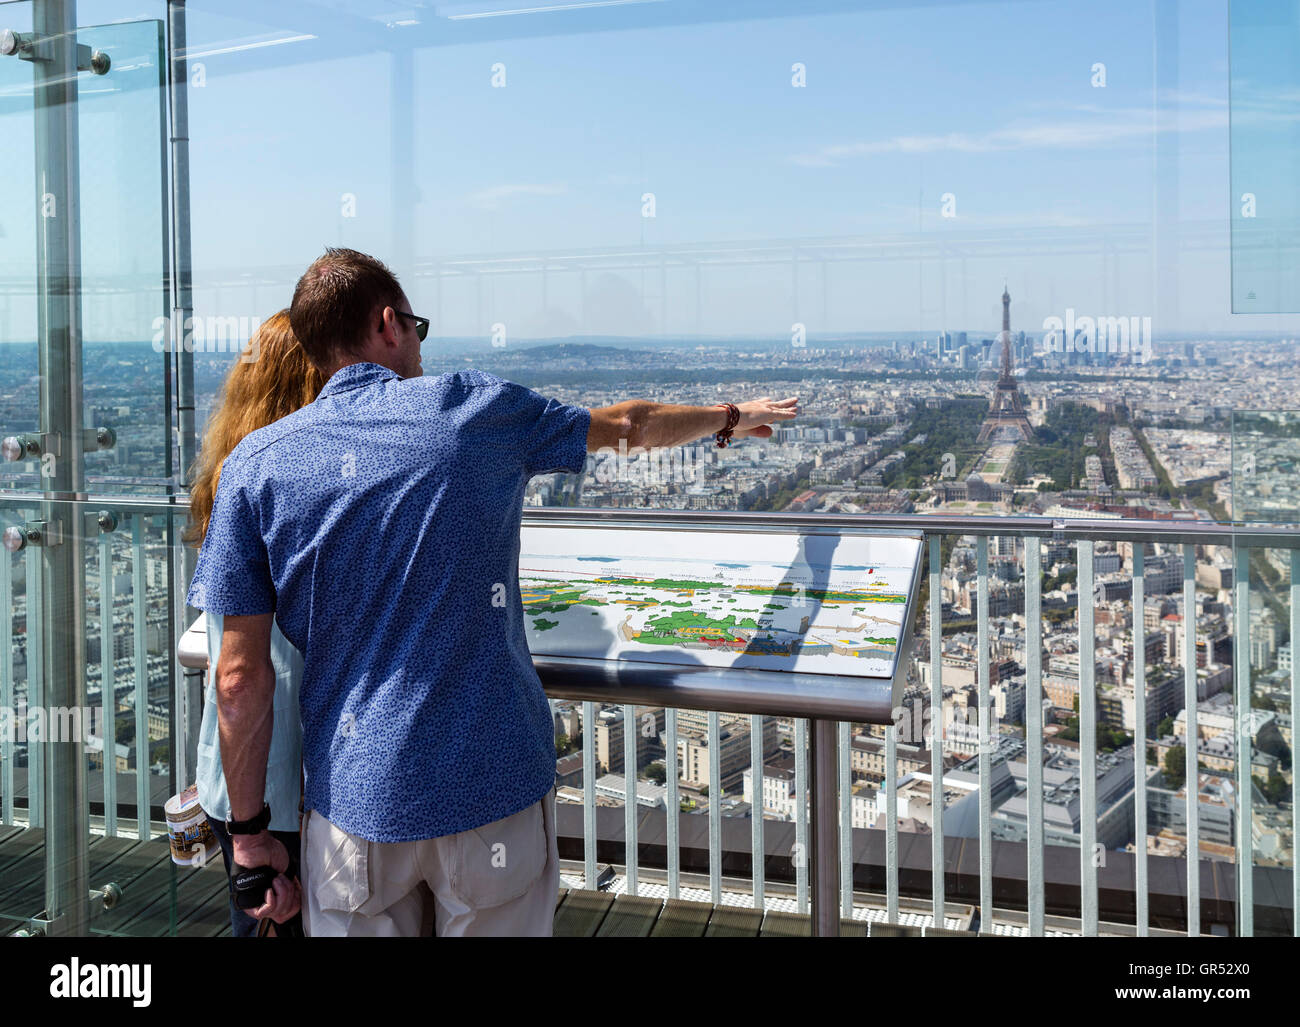 Paris, France. Vue sur la Tour Eiffel depuis le pont d'observation en haut de la Tour Montparnasse. Banque D'Images